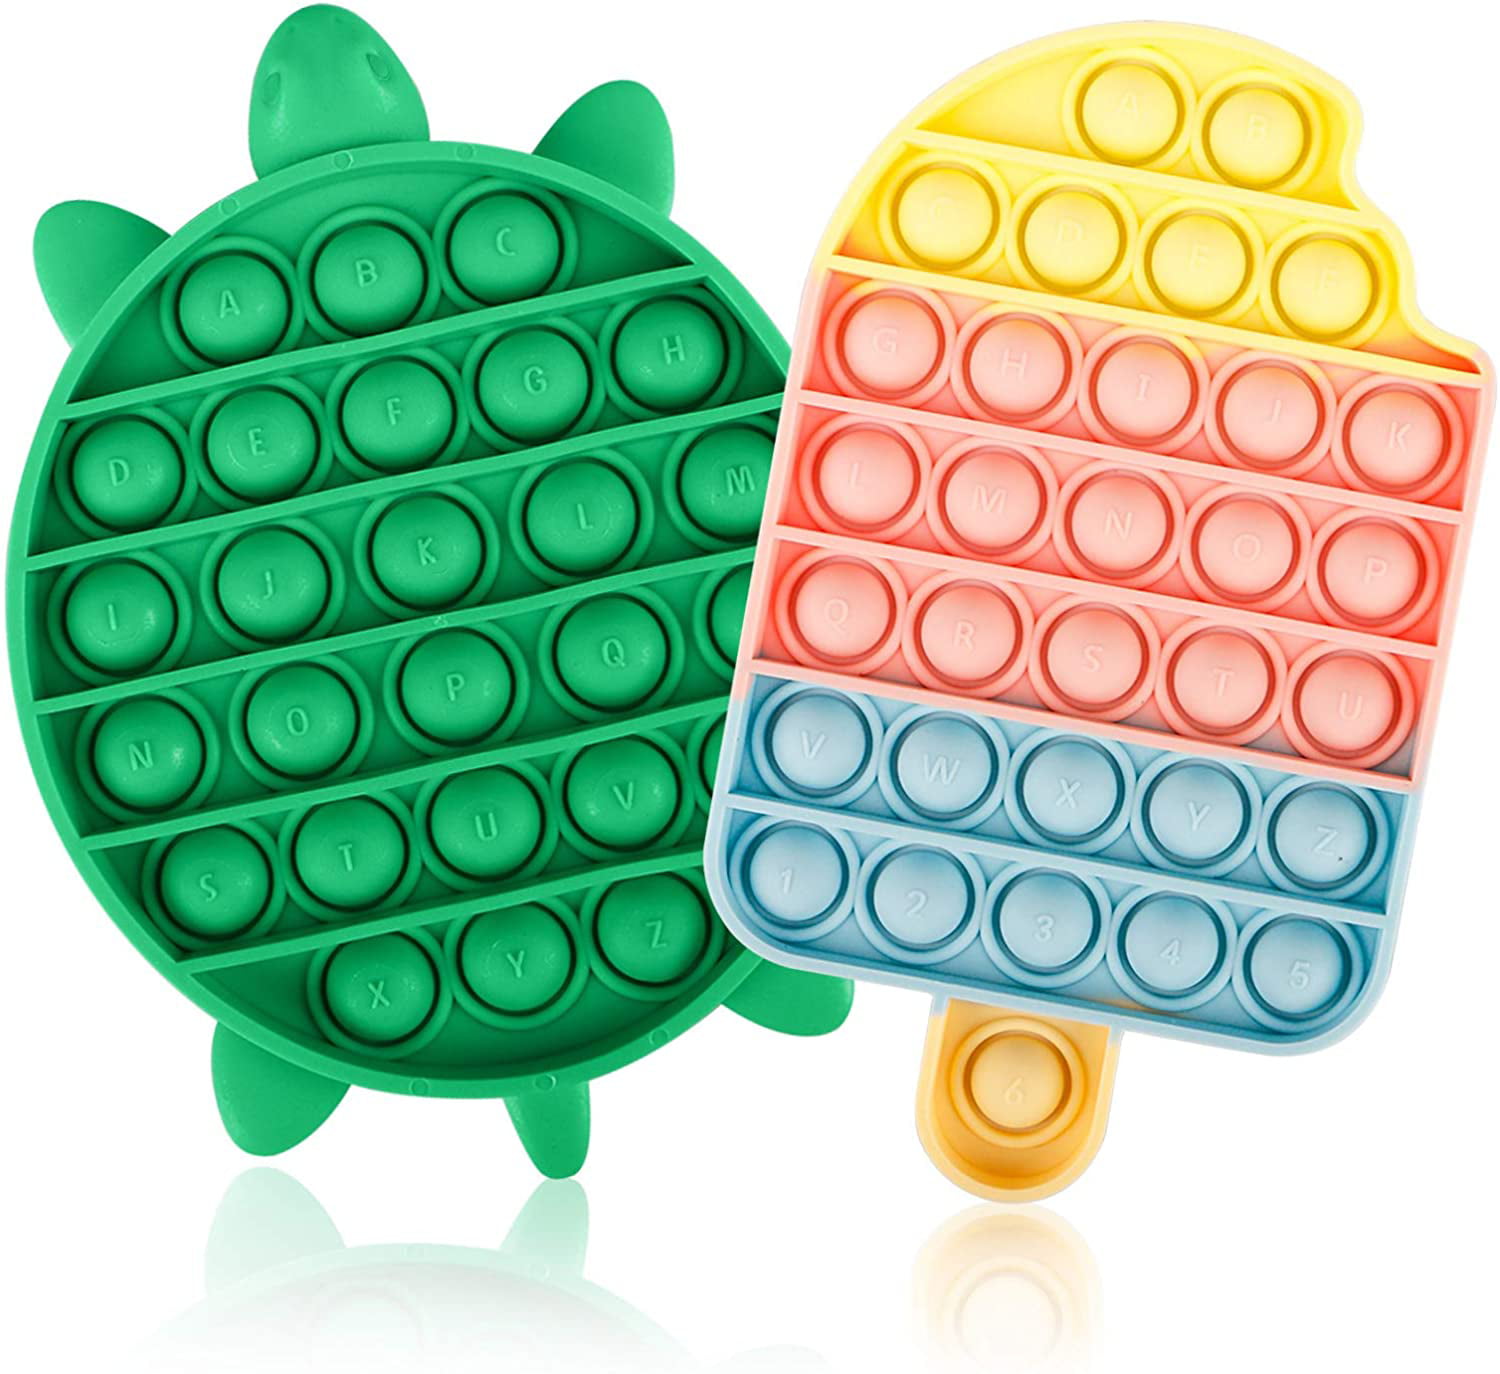 Details about   Sensory Fidget Toy Set Bubble Rainbow Silicone Autism Stress Relief Kids Toy 